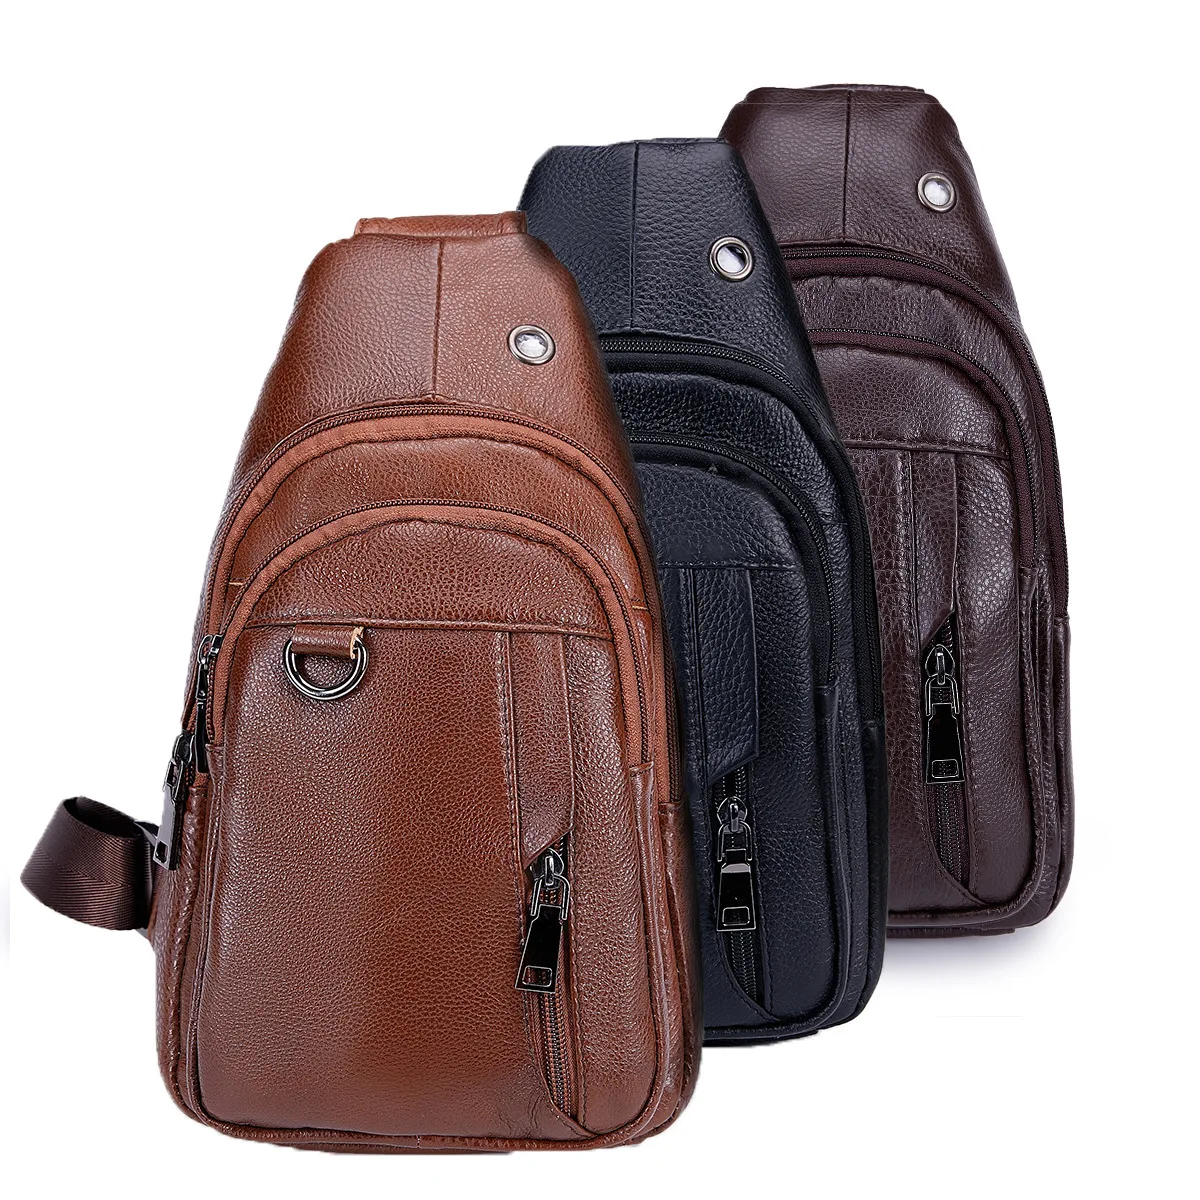 

BONAMIE New Brown Men Genuine Leather Cowhide Vintage Sling Chest Back Day Pack Travel Fashion Crossbody Messenger Shoulder Bag